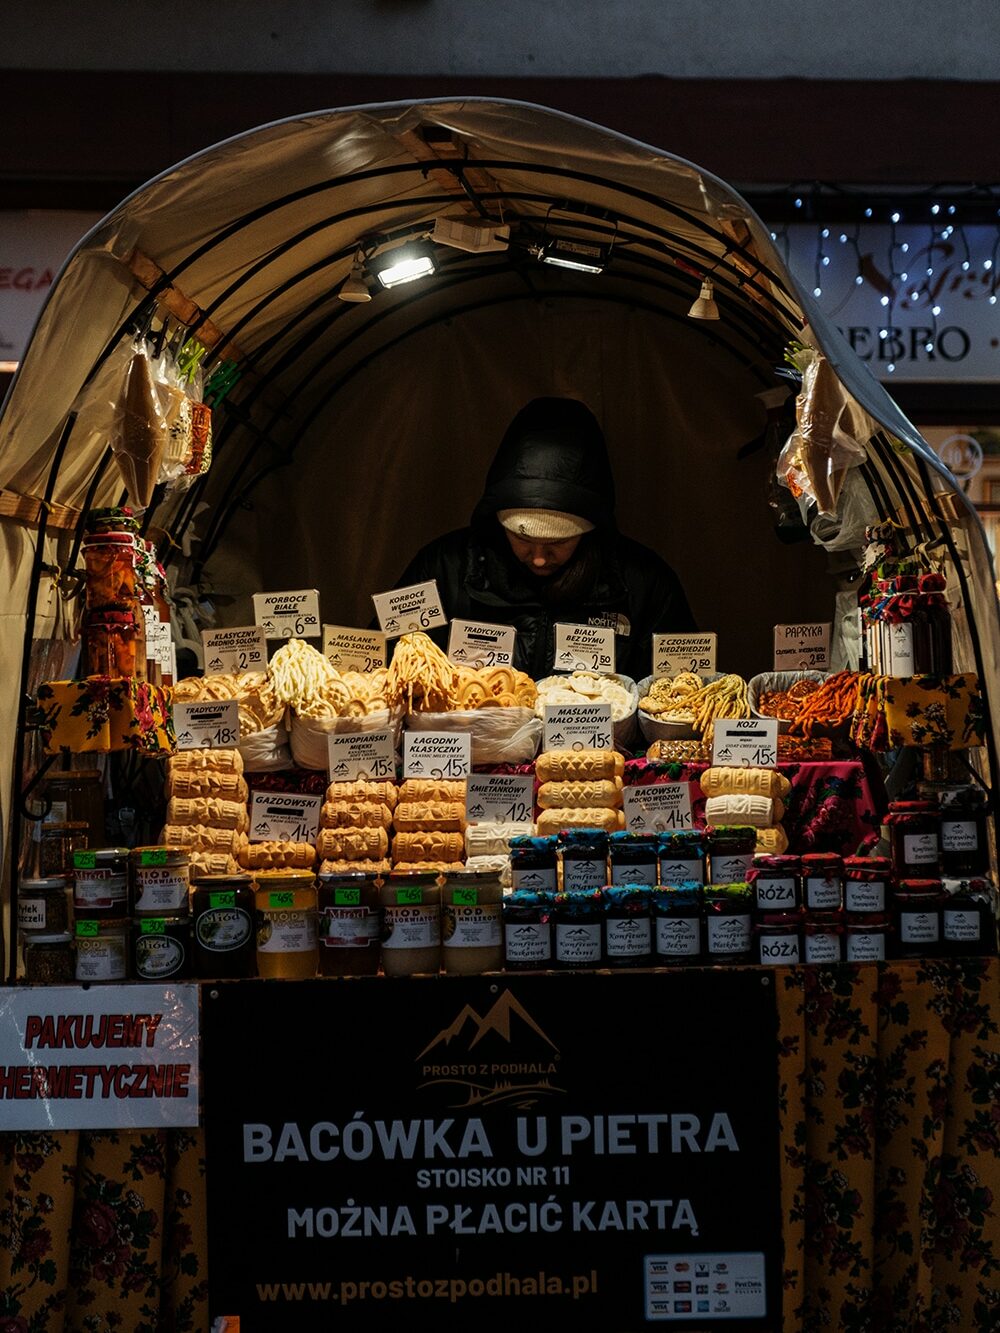 Stand pour acheter du fromage des Tatras à Zakopane